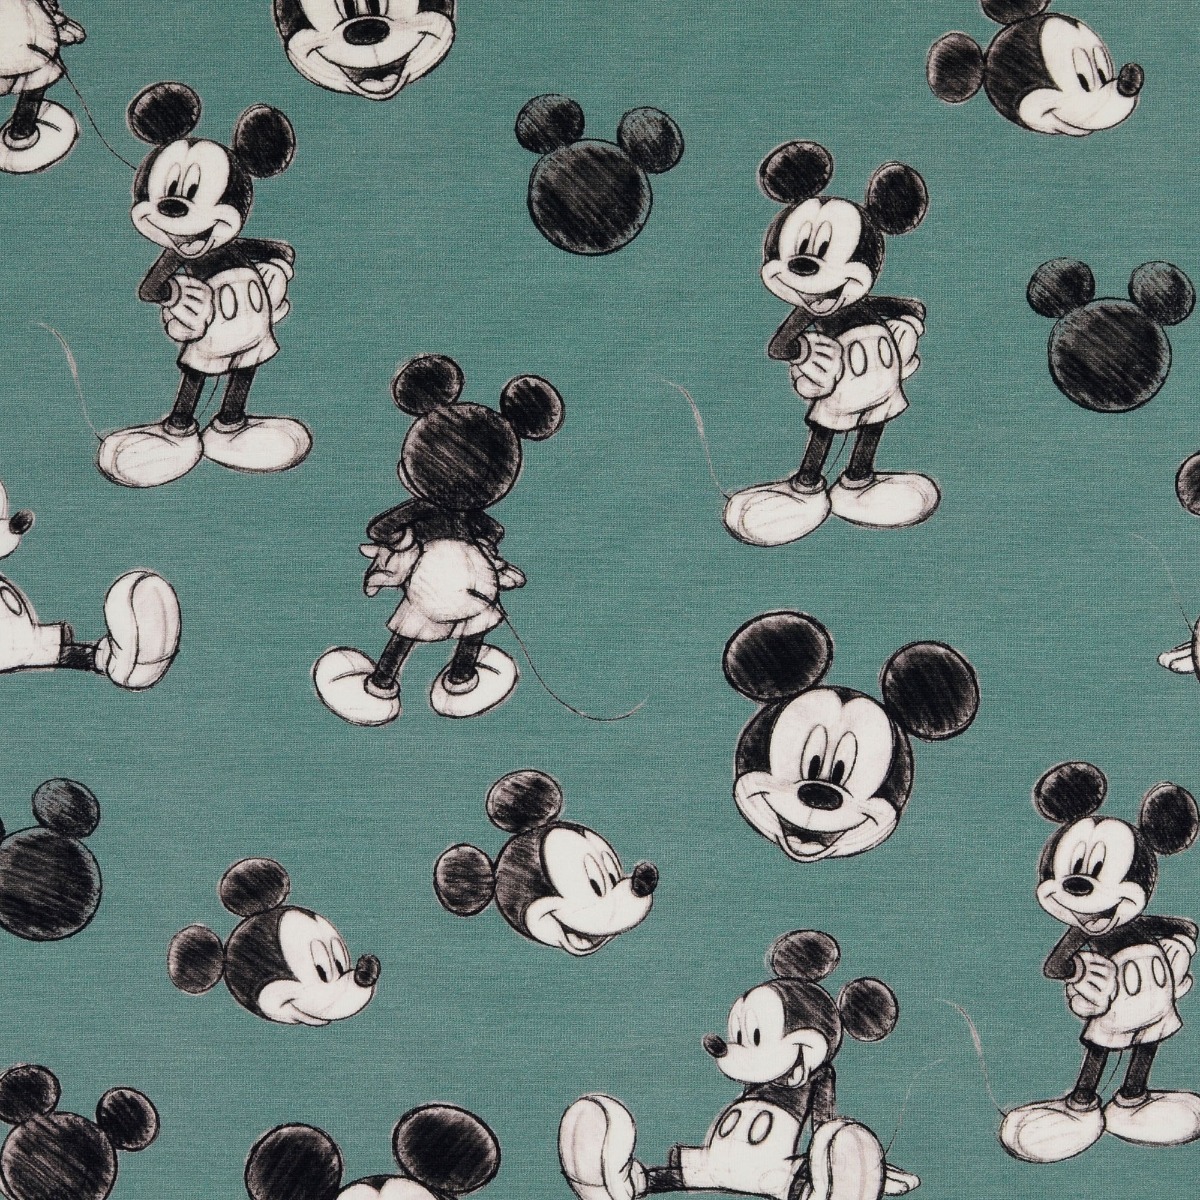 Jersey Mickey Mouse Skizzen auf Dunkelmint Lizenz Digital